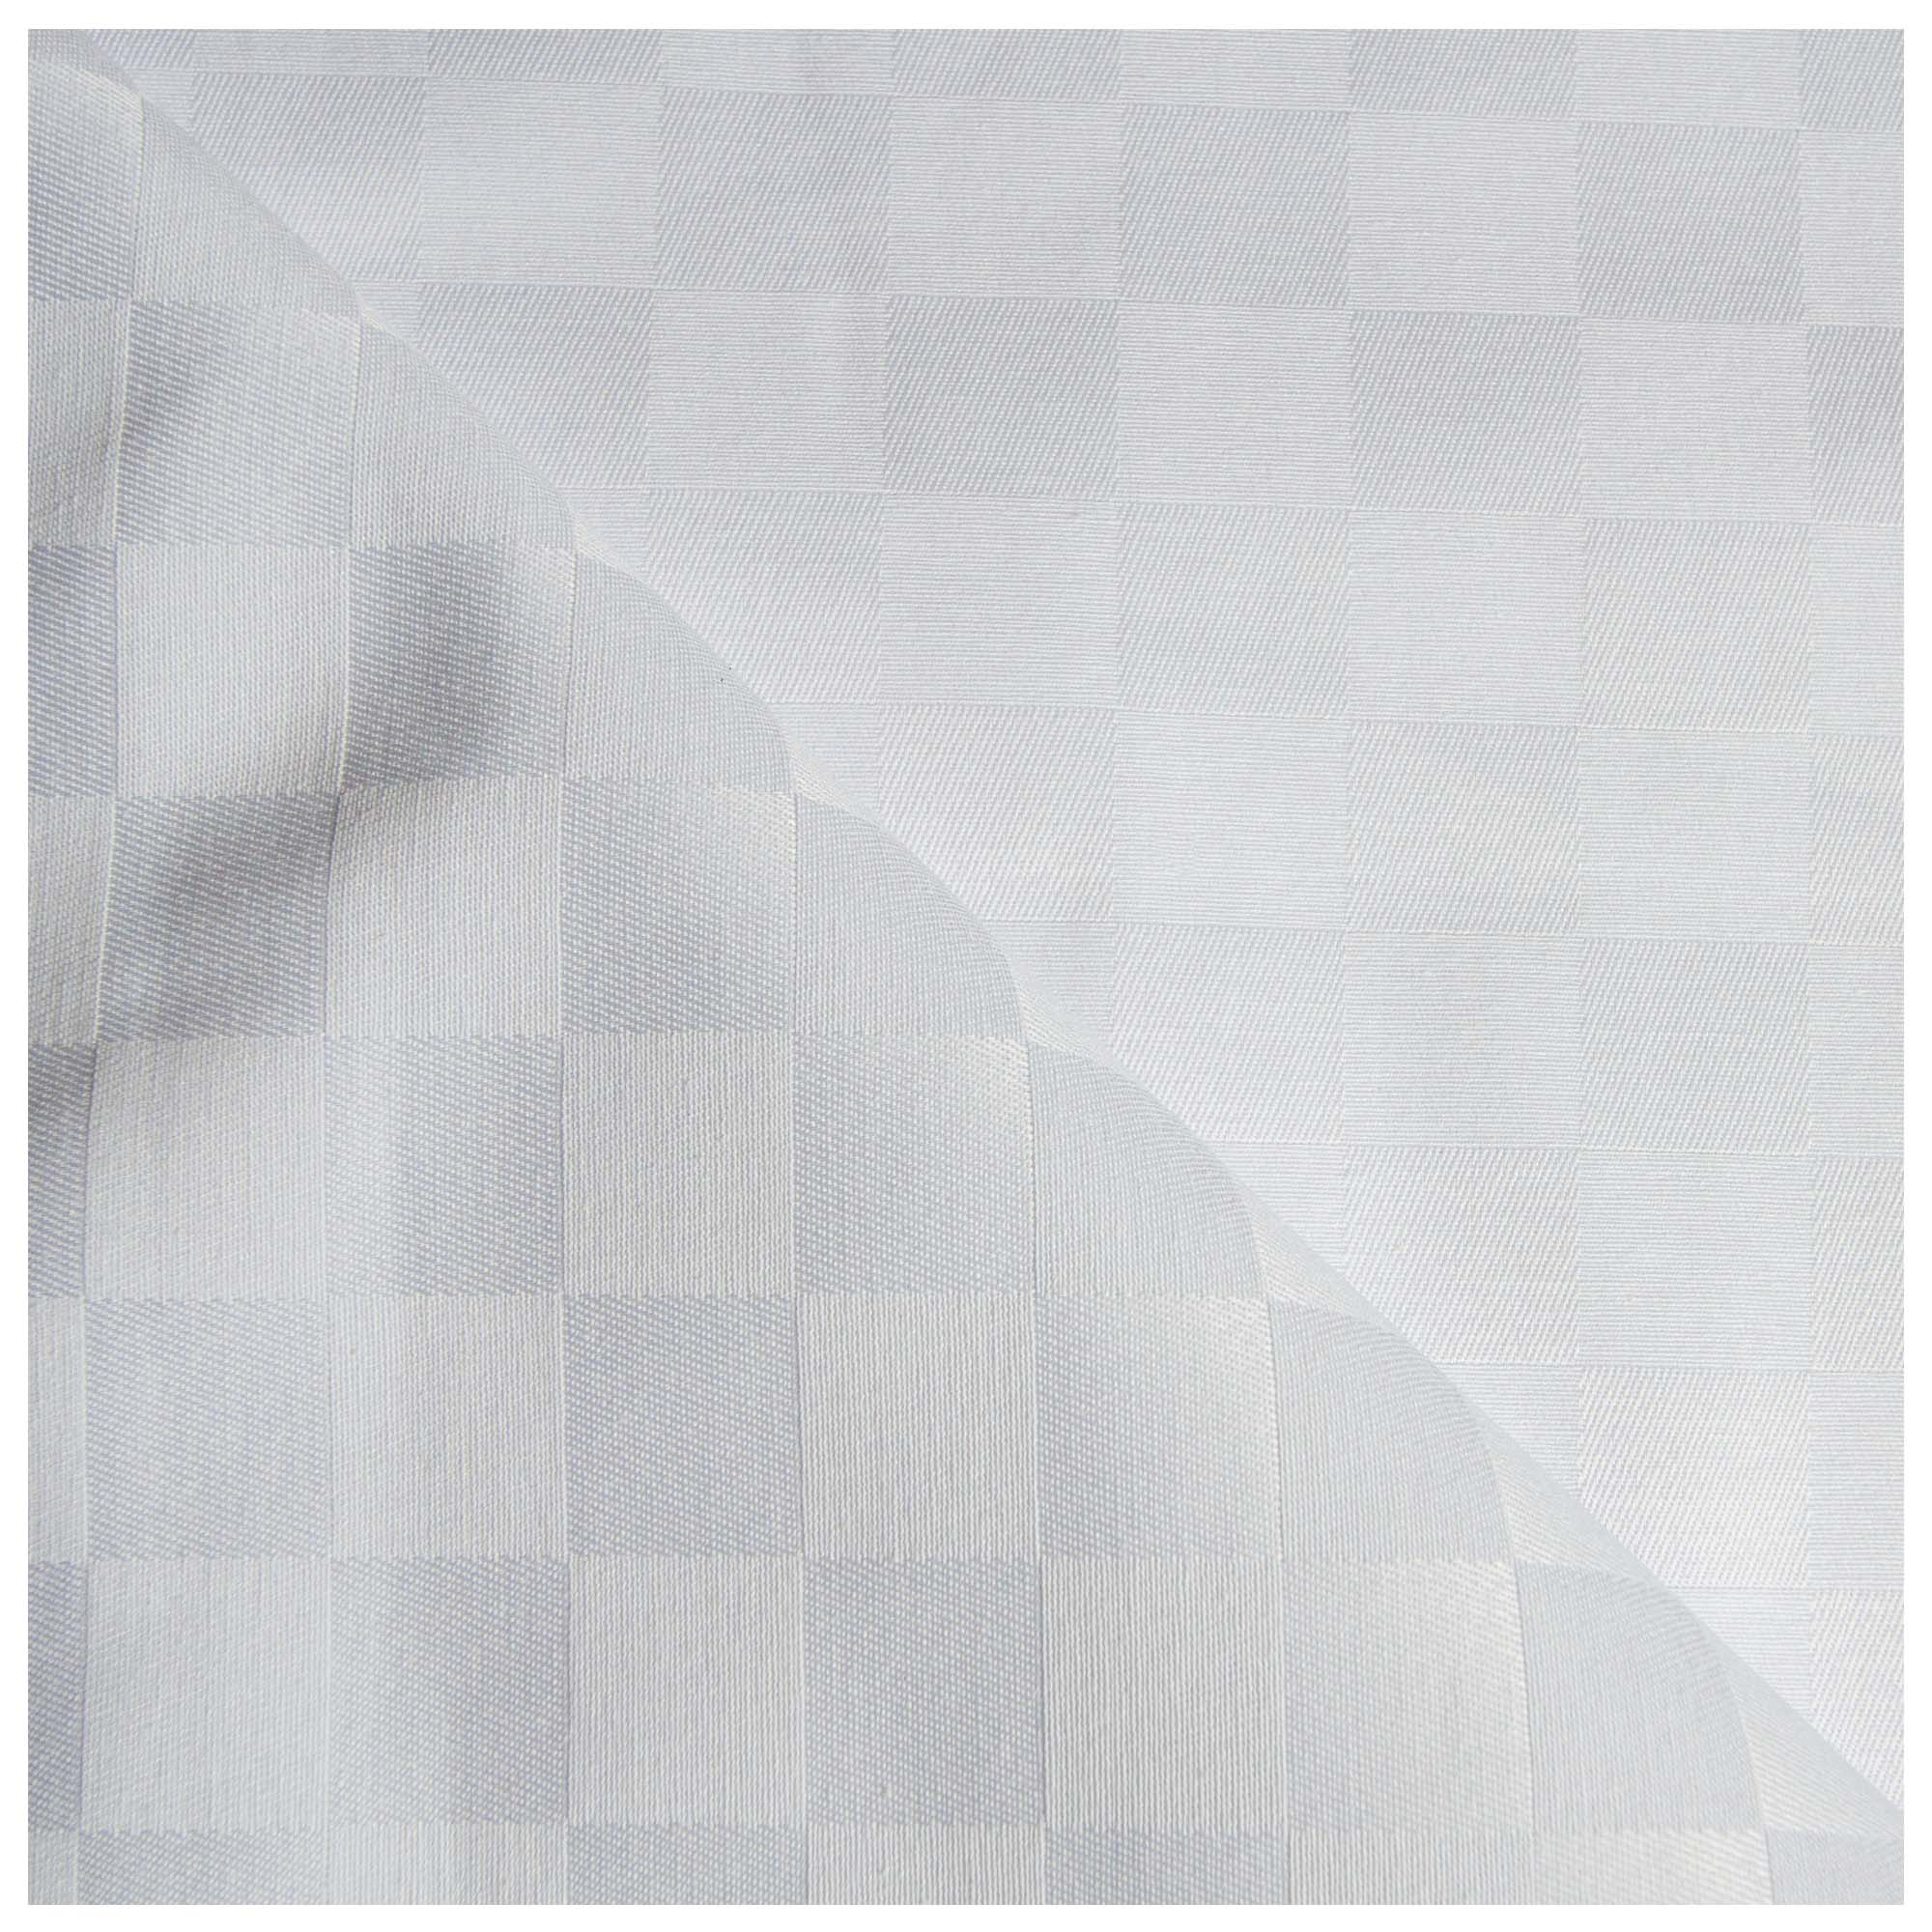 Horeca/HORECA PRODUCTS/Fabric Table Linens